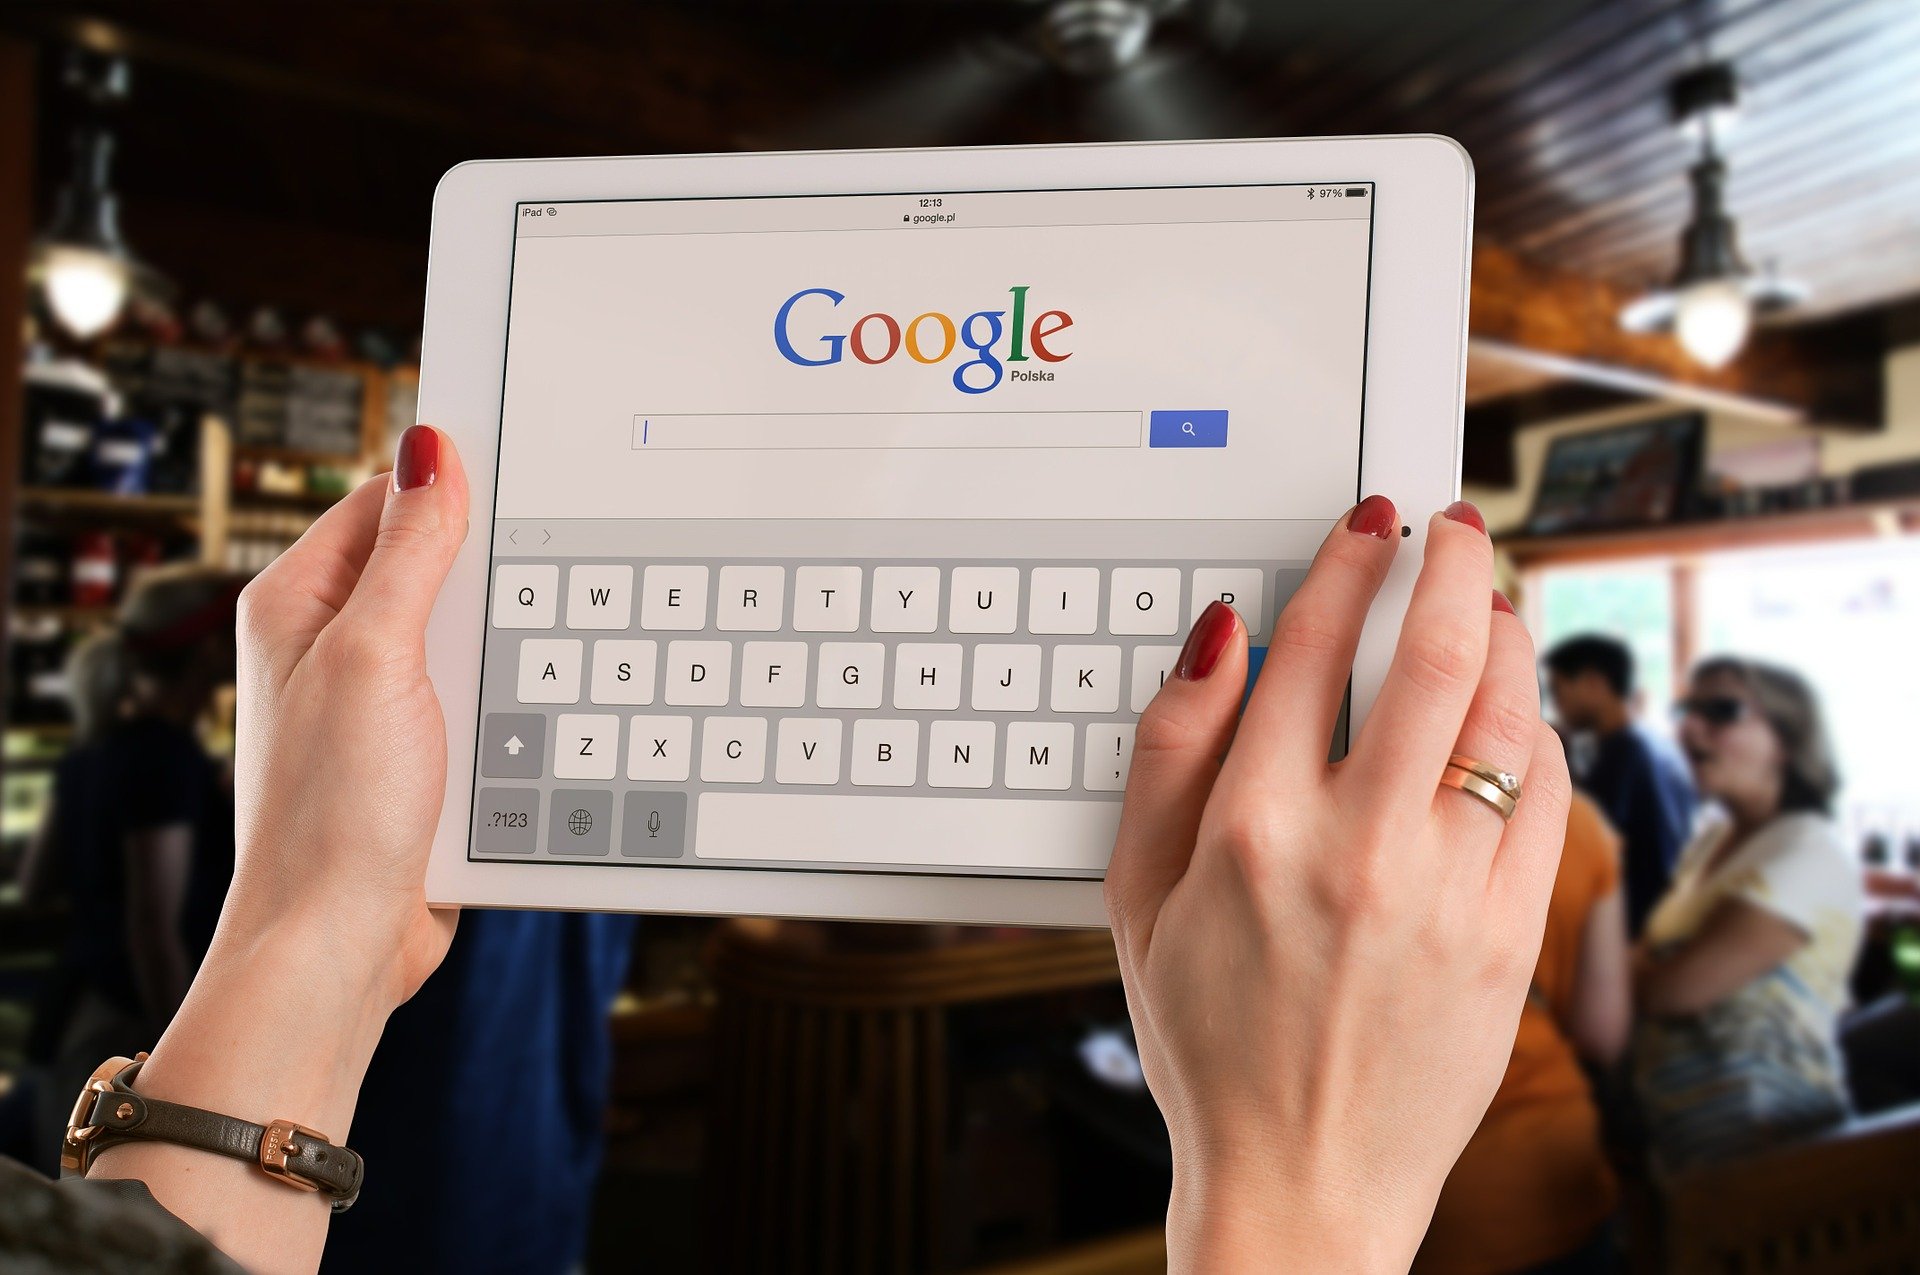 Google admite escuchar el 0,2% de las conversaciones con su asistente virtual